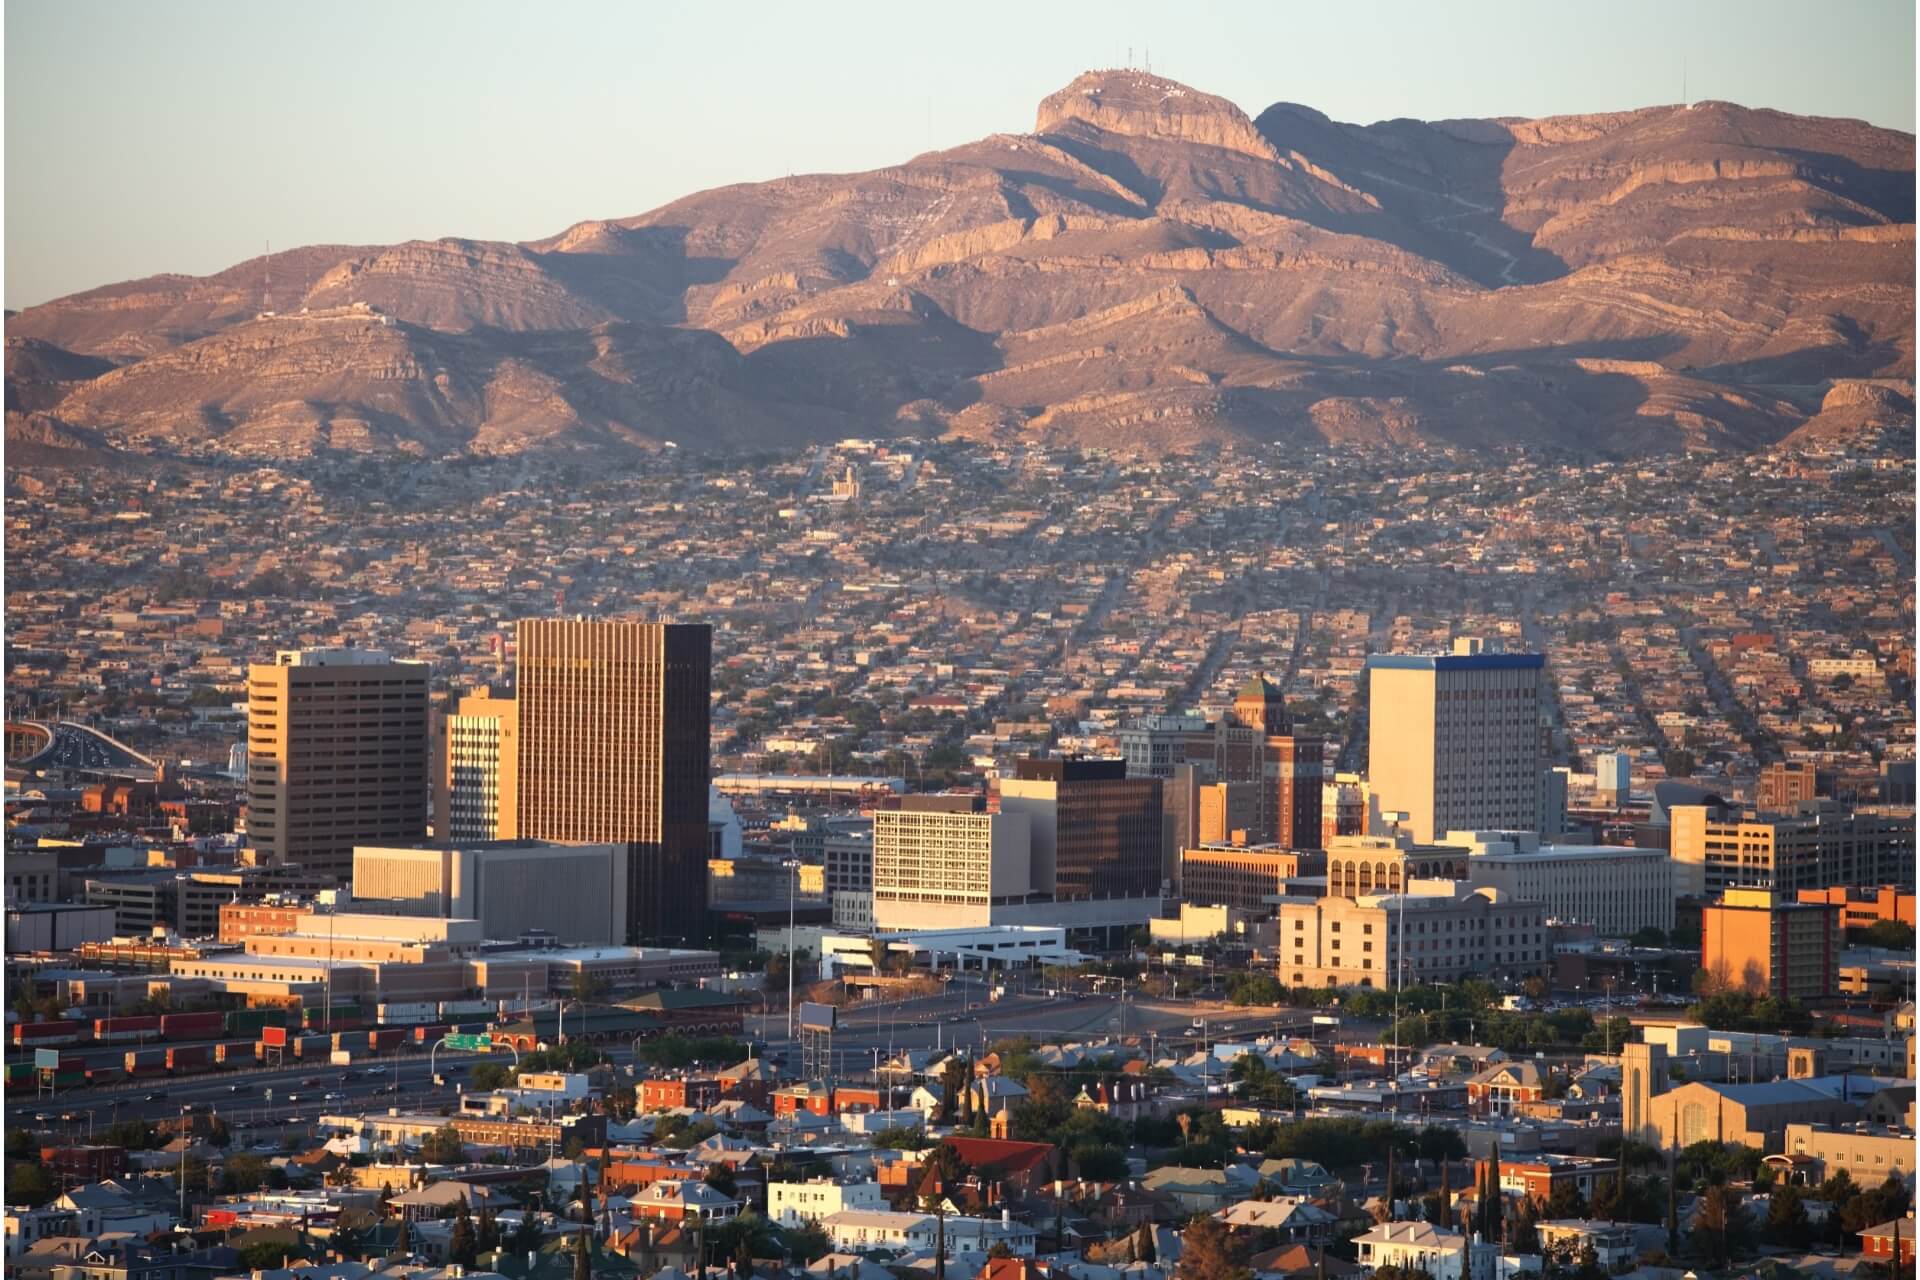 El Paso, Texas - skyline